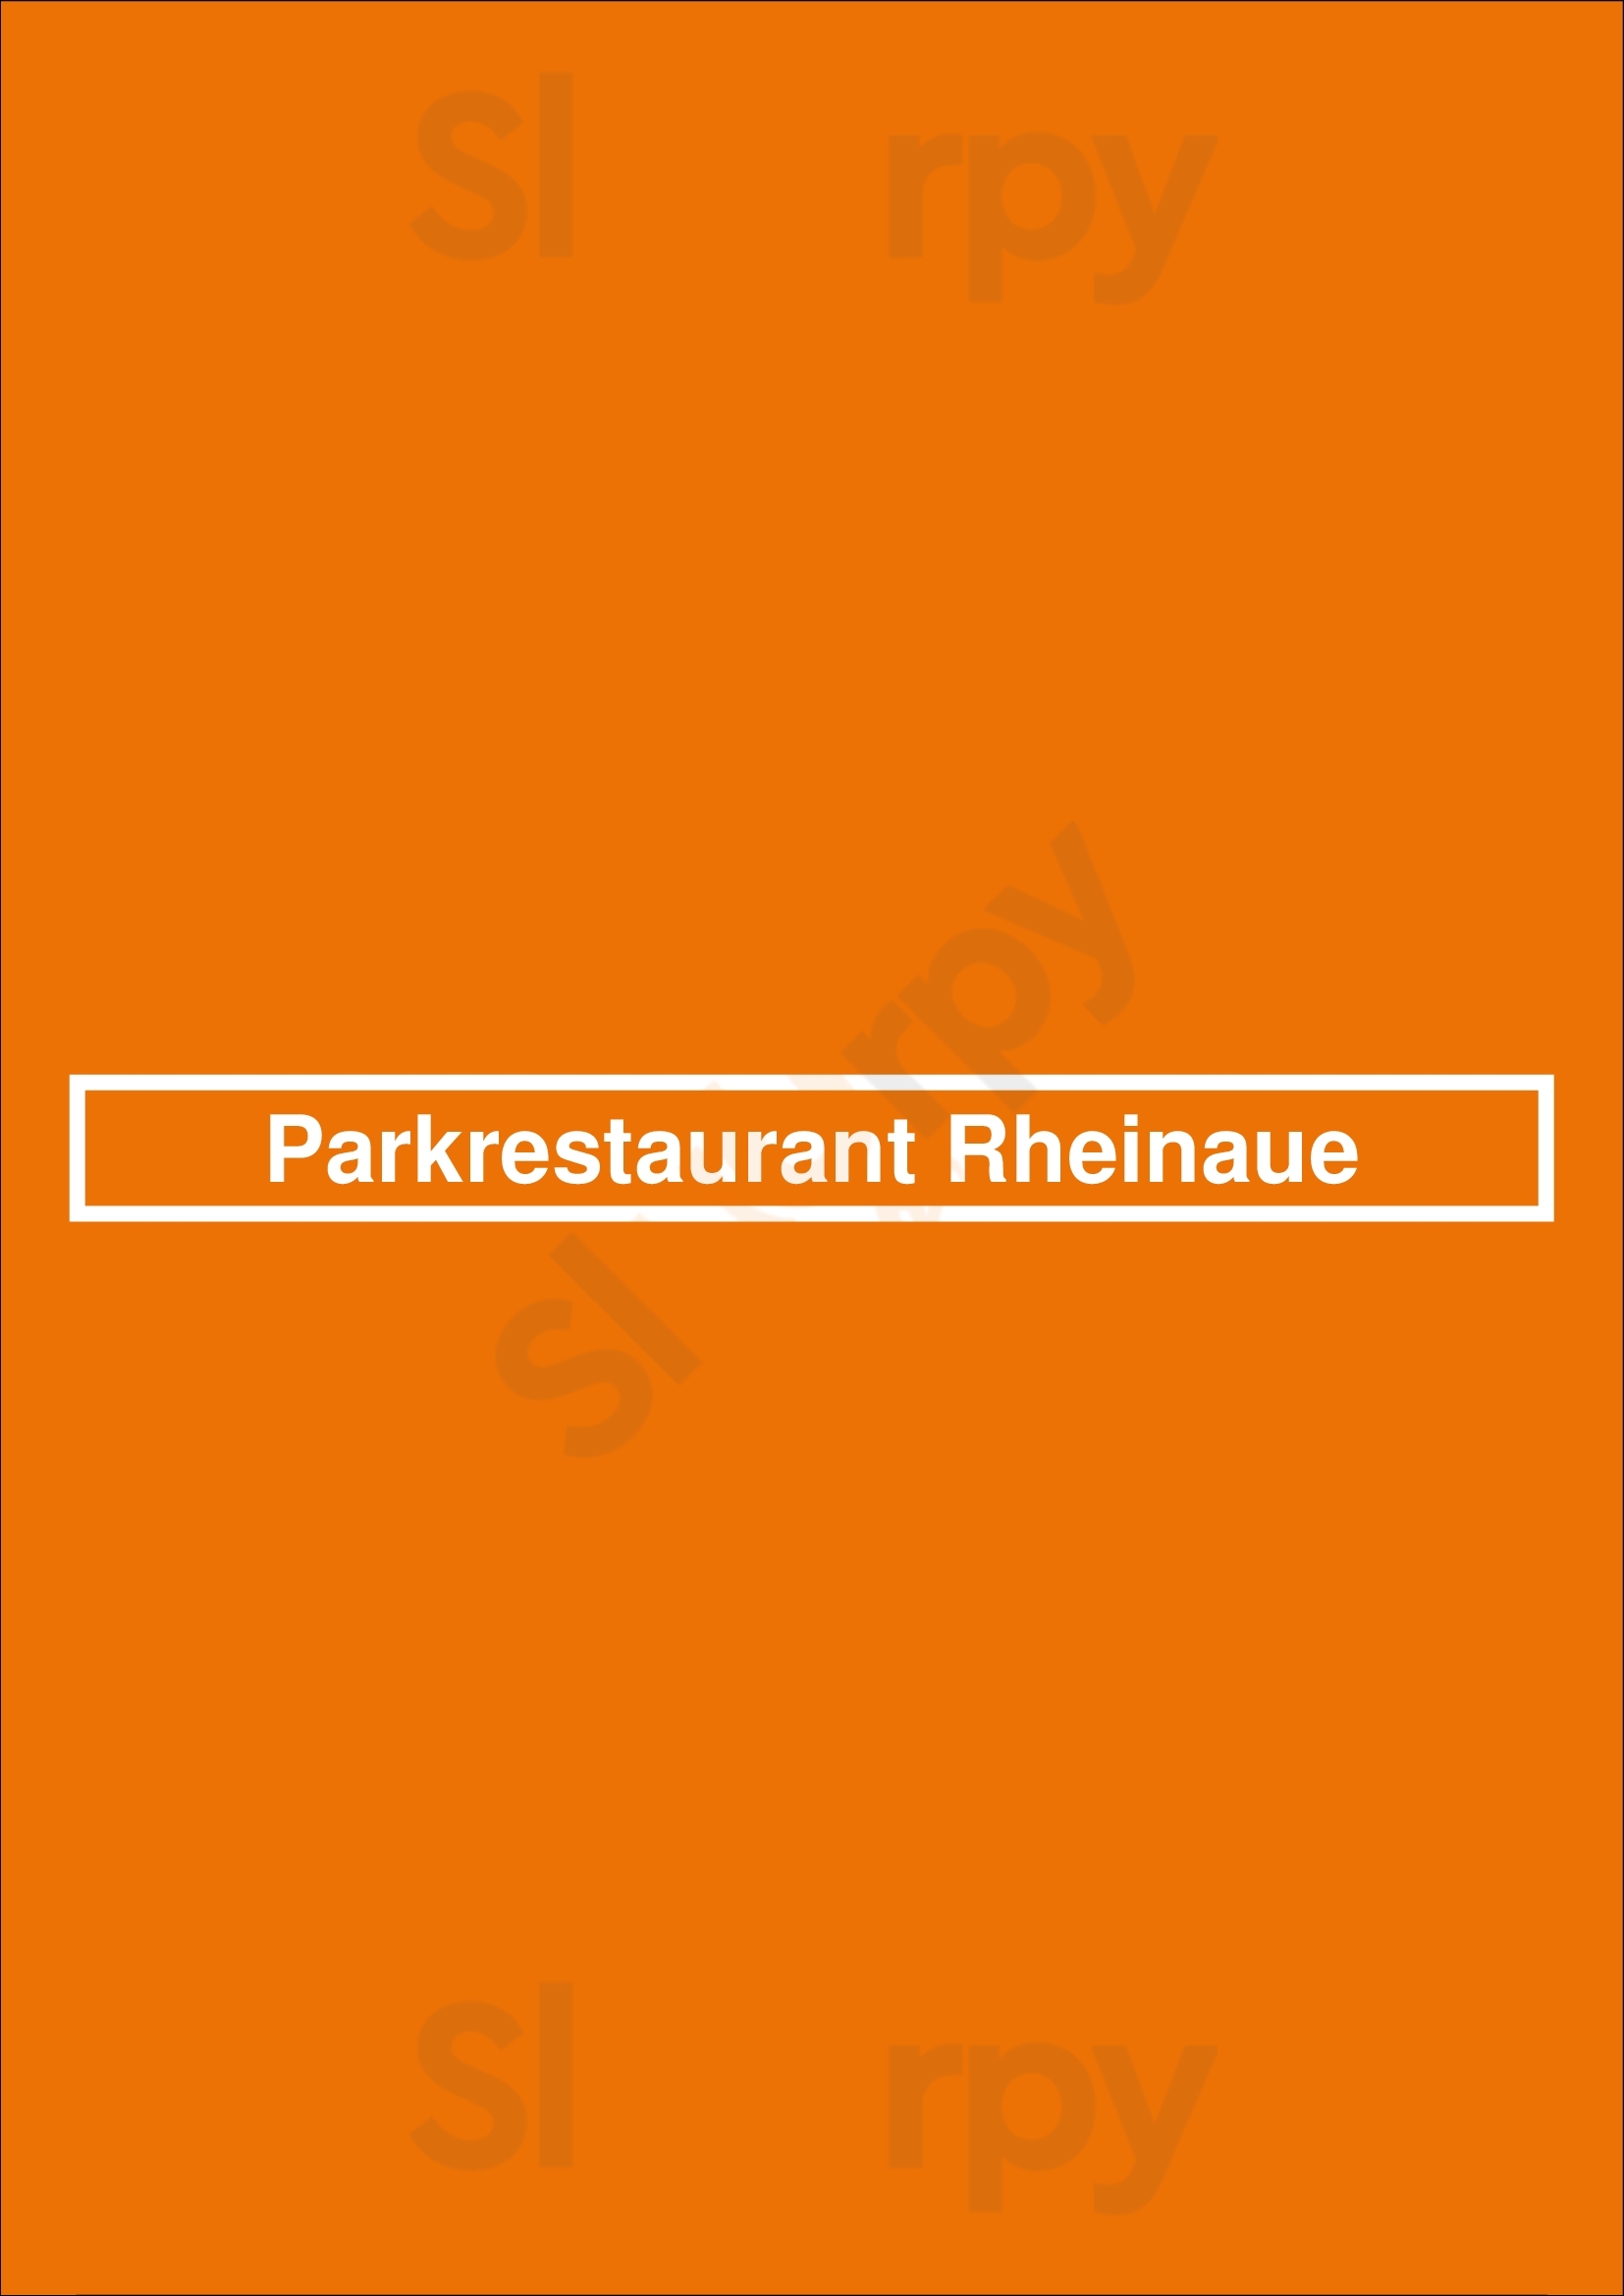 Parkrestaurant Rheinaue Bonn Menu - 1